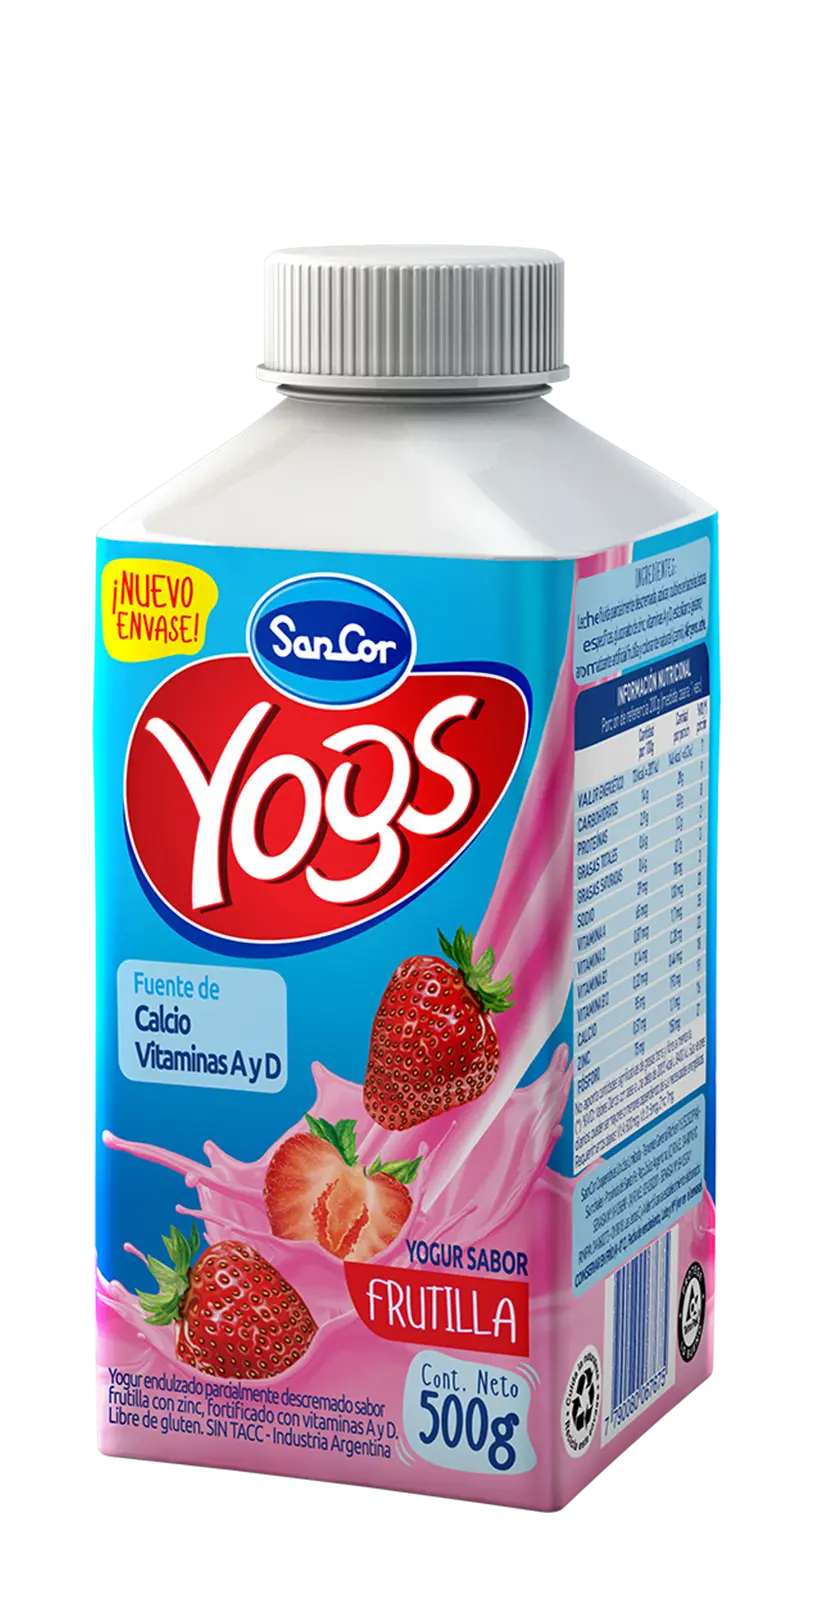 sancor yogs - Cuántas proteínas tiene el yogur bebible